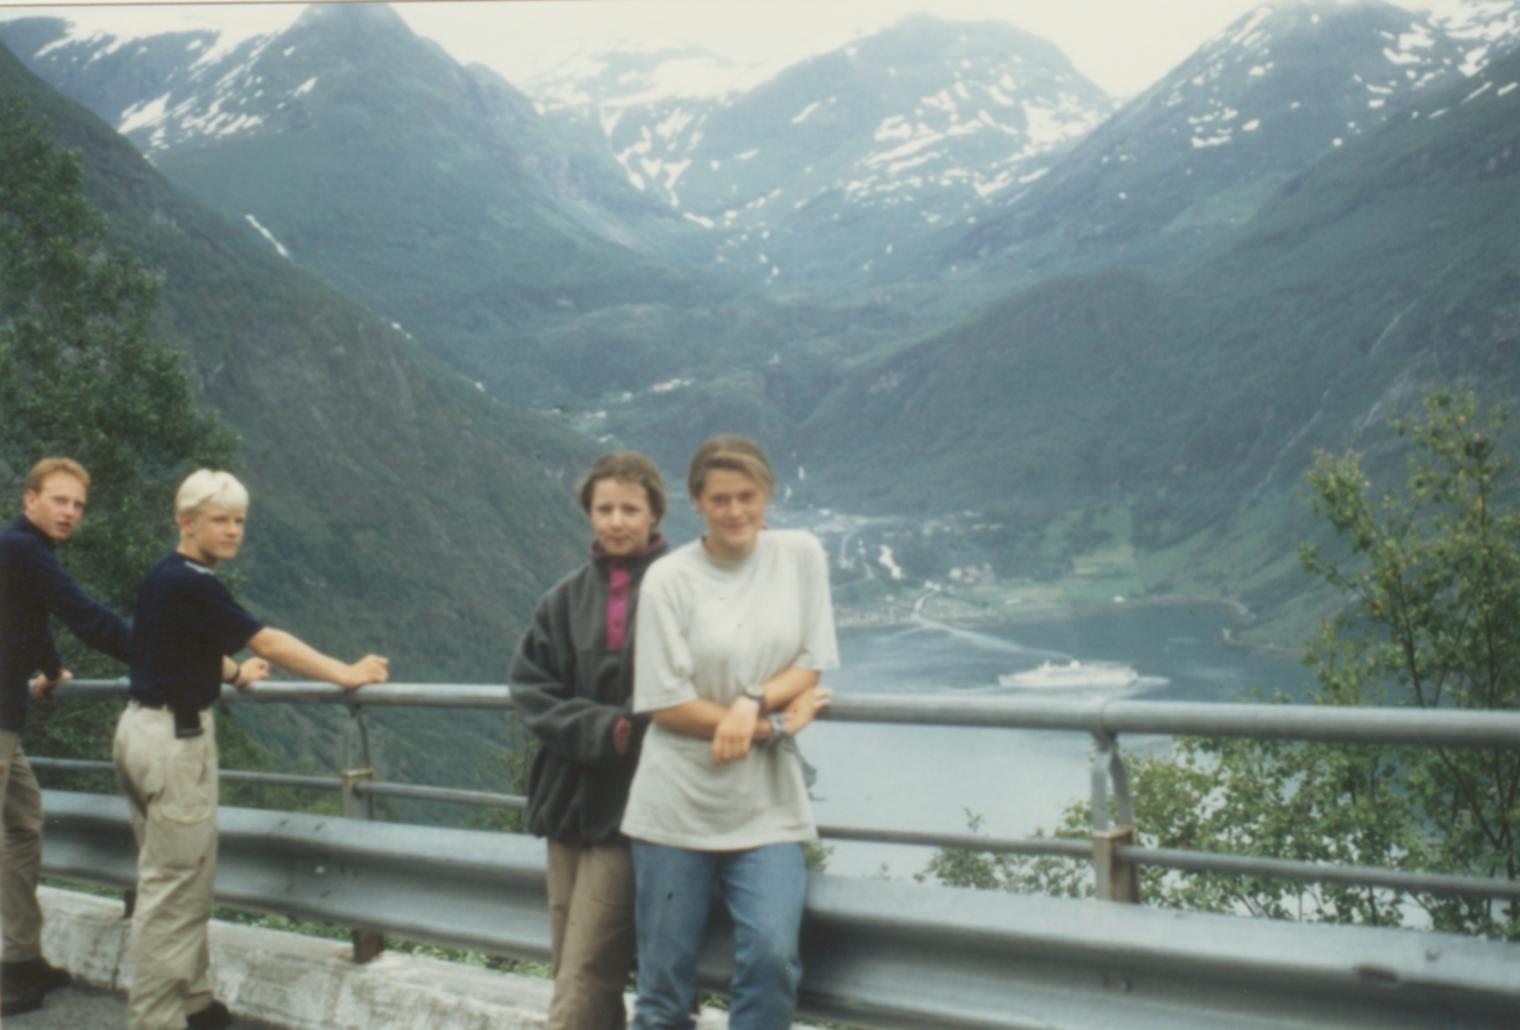 Gruppenbild vor der Kulisse des Geiranger-Fjords